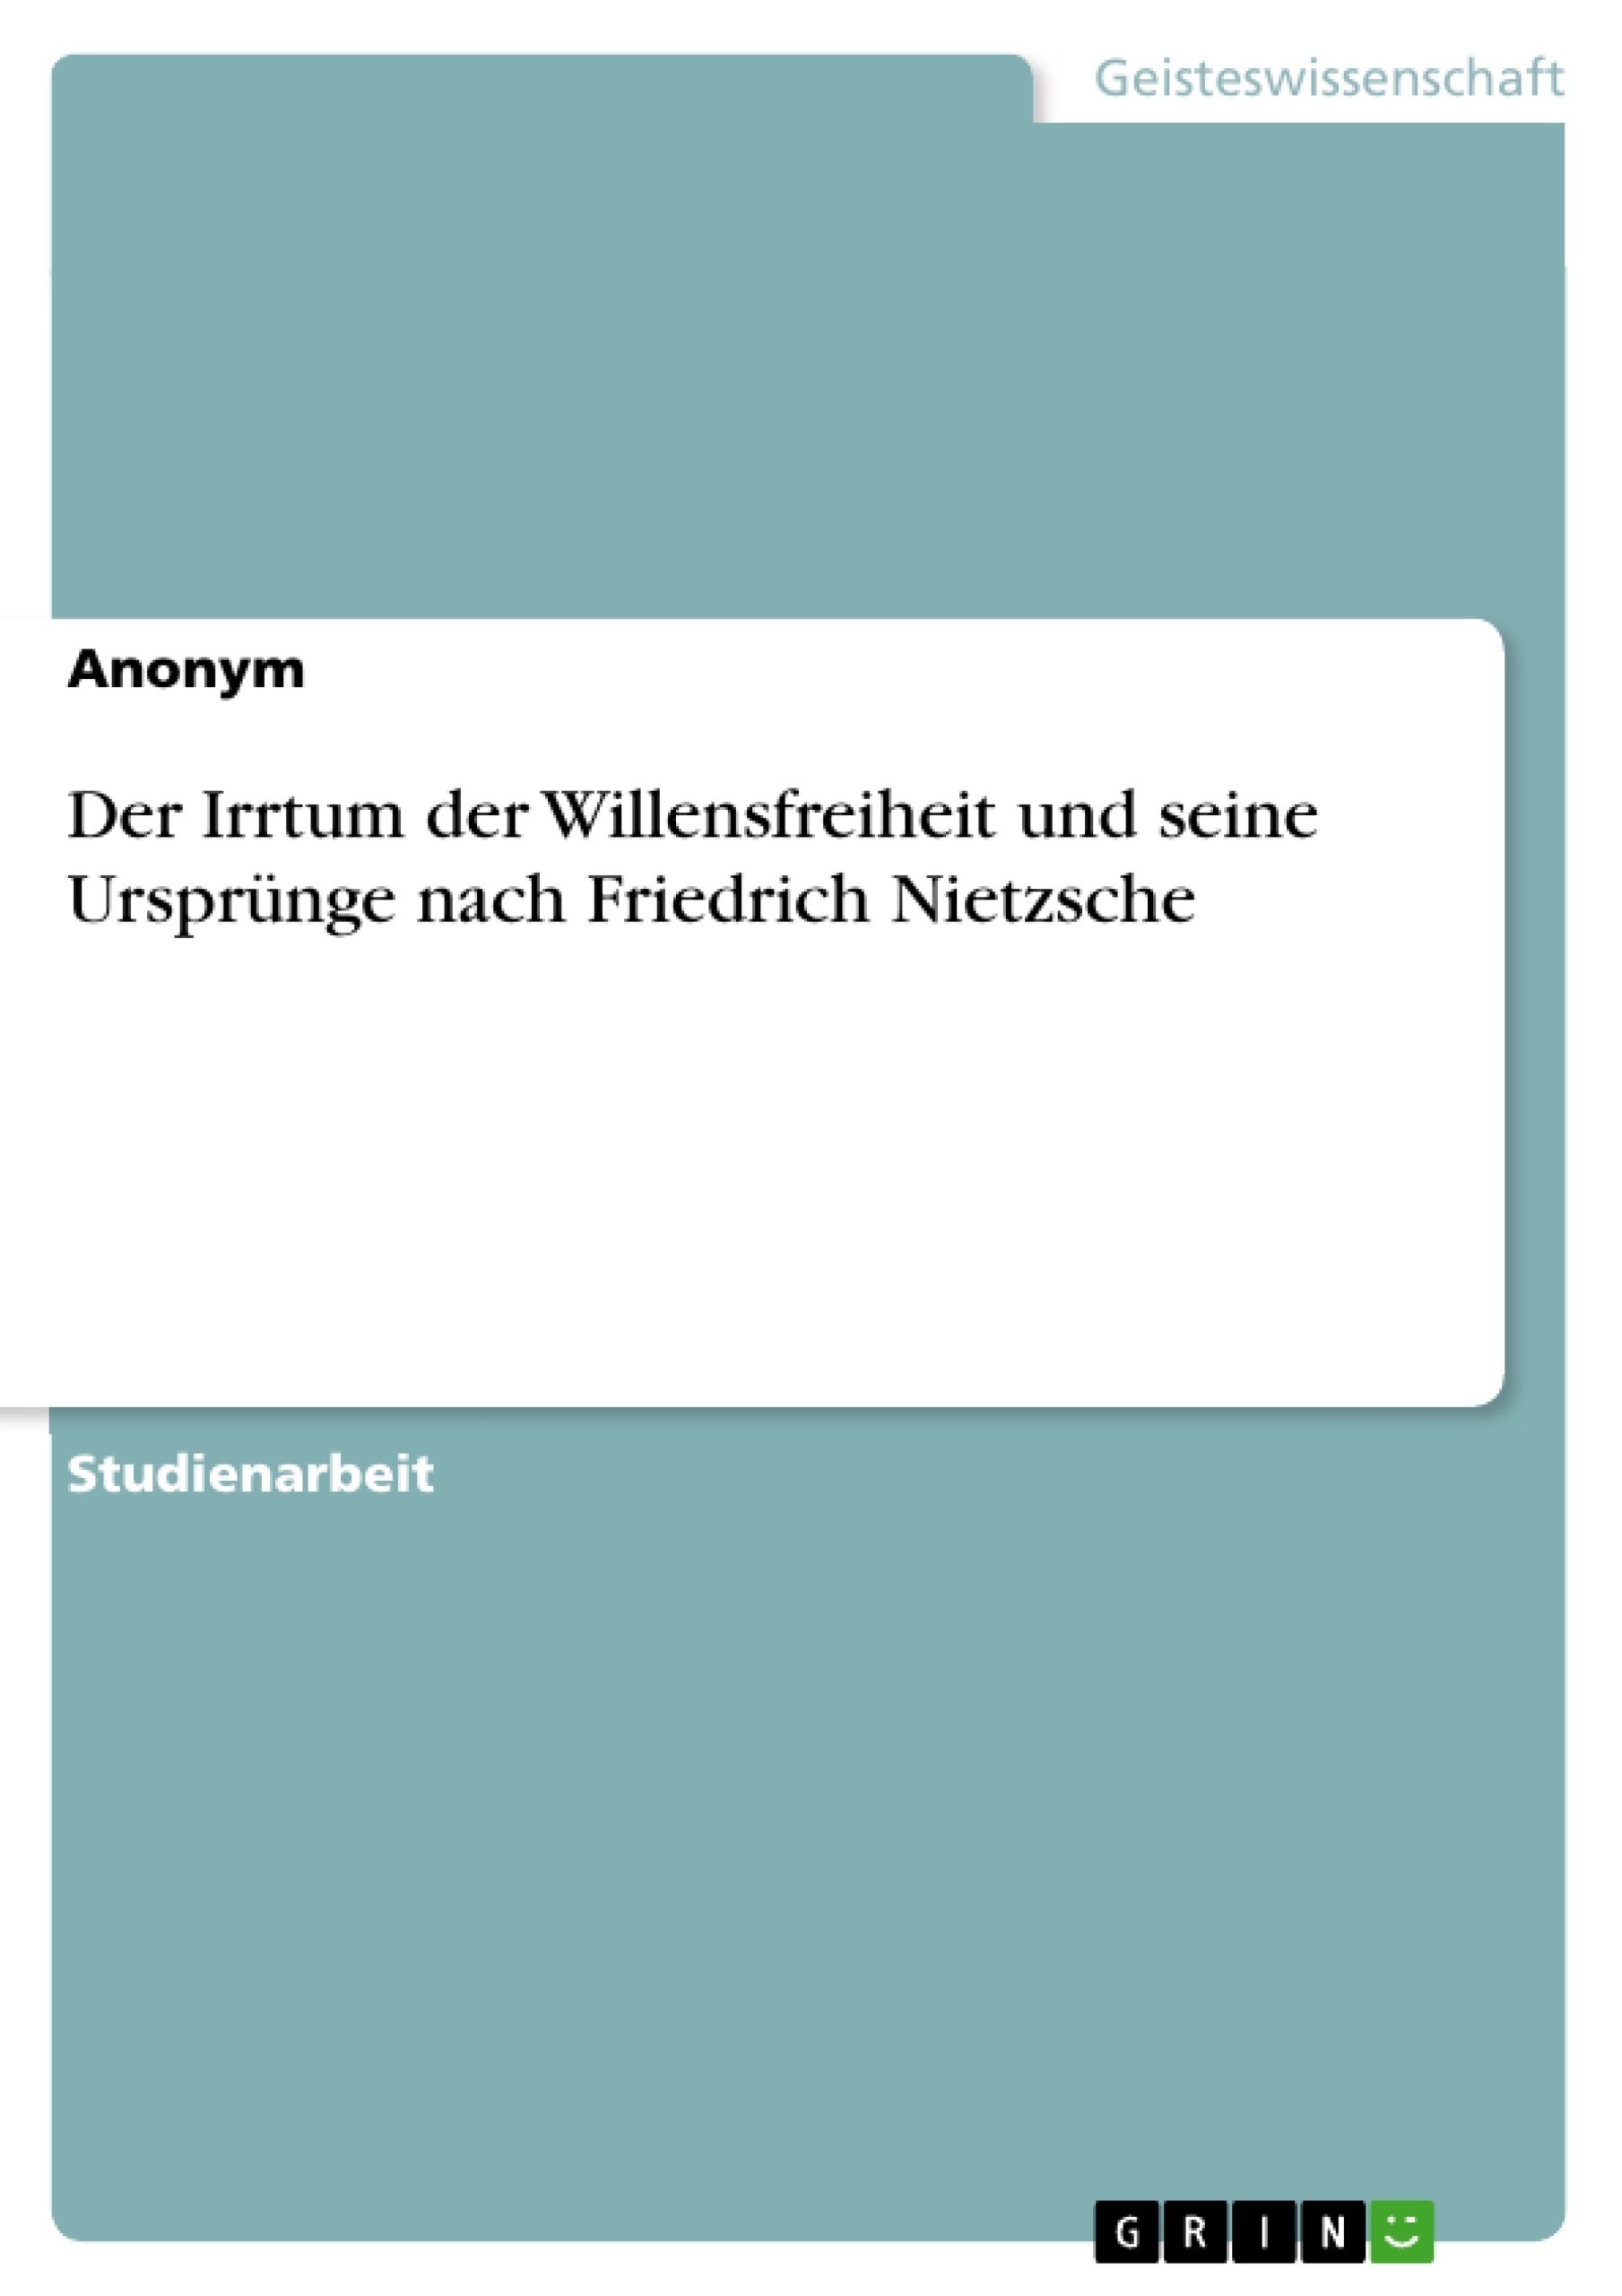 Title: Der Irrtum der Willensfreiheit und seine Ursprünge nach Friedrich Nietzsche